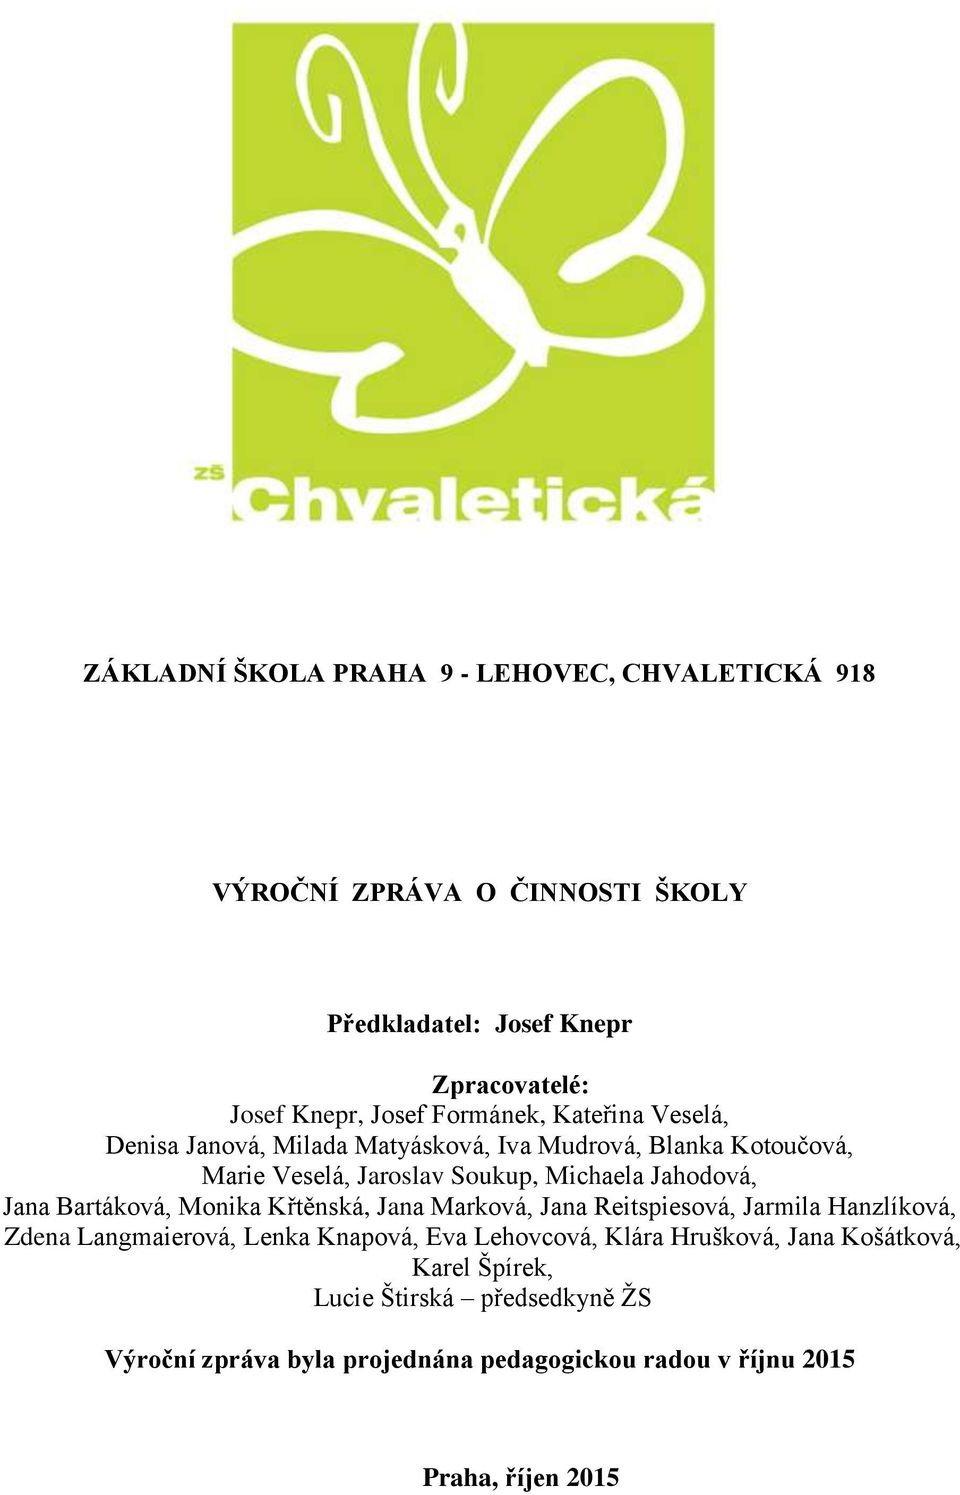 ZÁKLADNÍ ŠKOLA PRAHA 9 - LEHOVEC, CHVALETICKÁ PDF Free Download